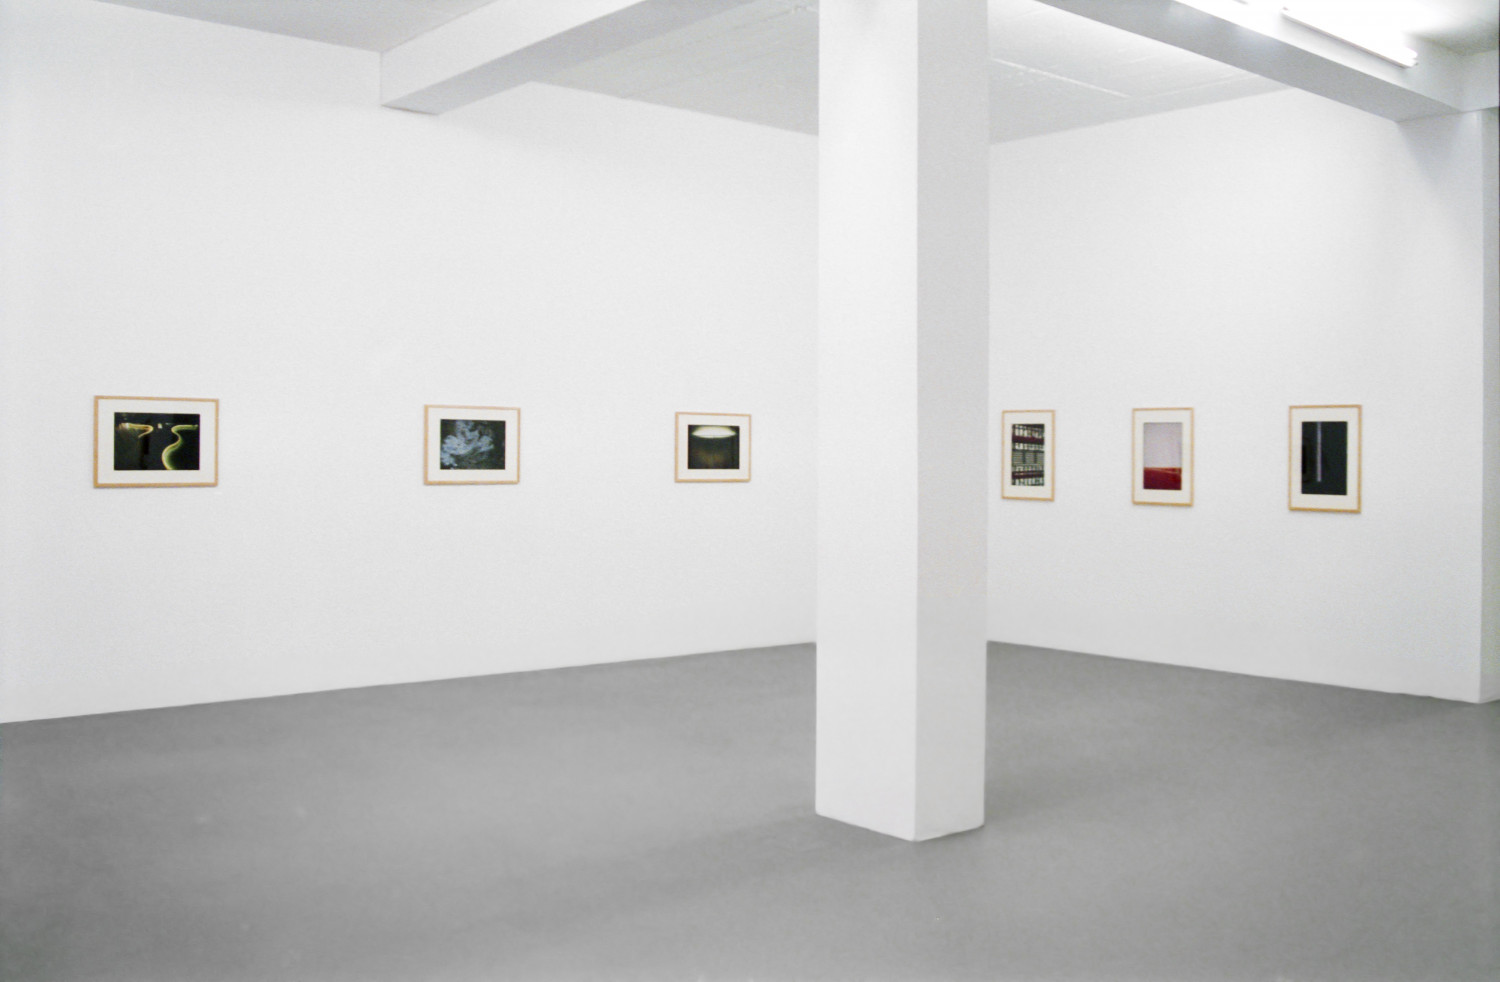 John Chamberlain, ‘Juan Uslé / John Chamberlain – Photographien’, Installationsansicht, Buchmann Galerie Köln, 1996